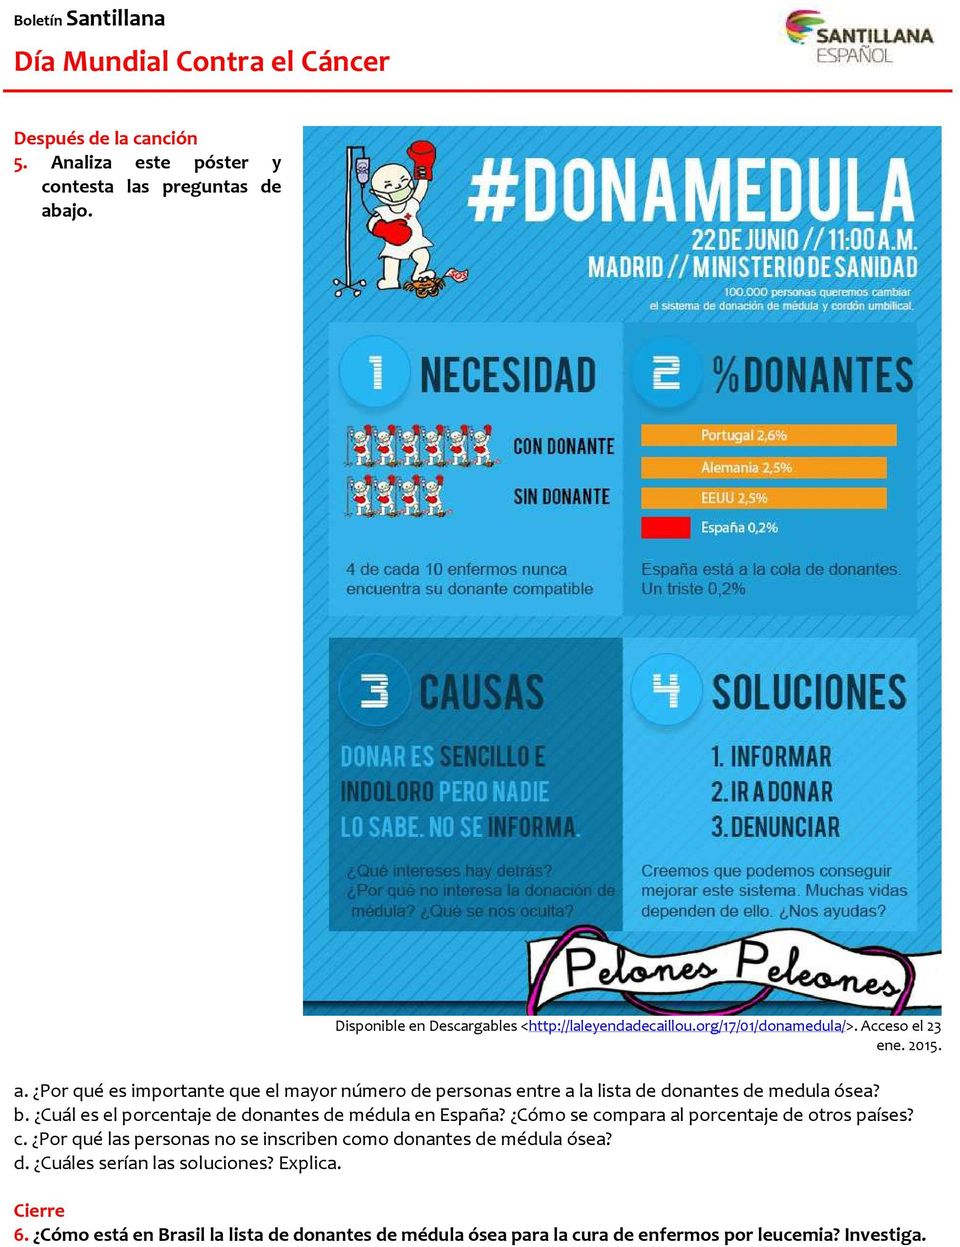 Cuál es el porcentaje de donantes de médula en España? Cómo se compara al porcentaje de otros países? c. Por qué las personas no se inscriben como donantes de médula ósea?